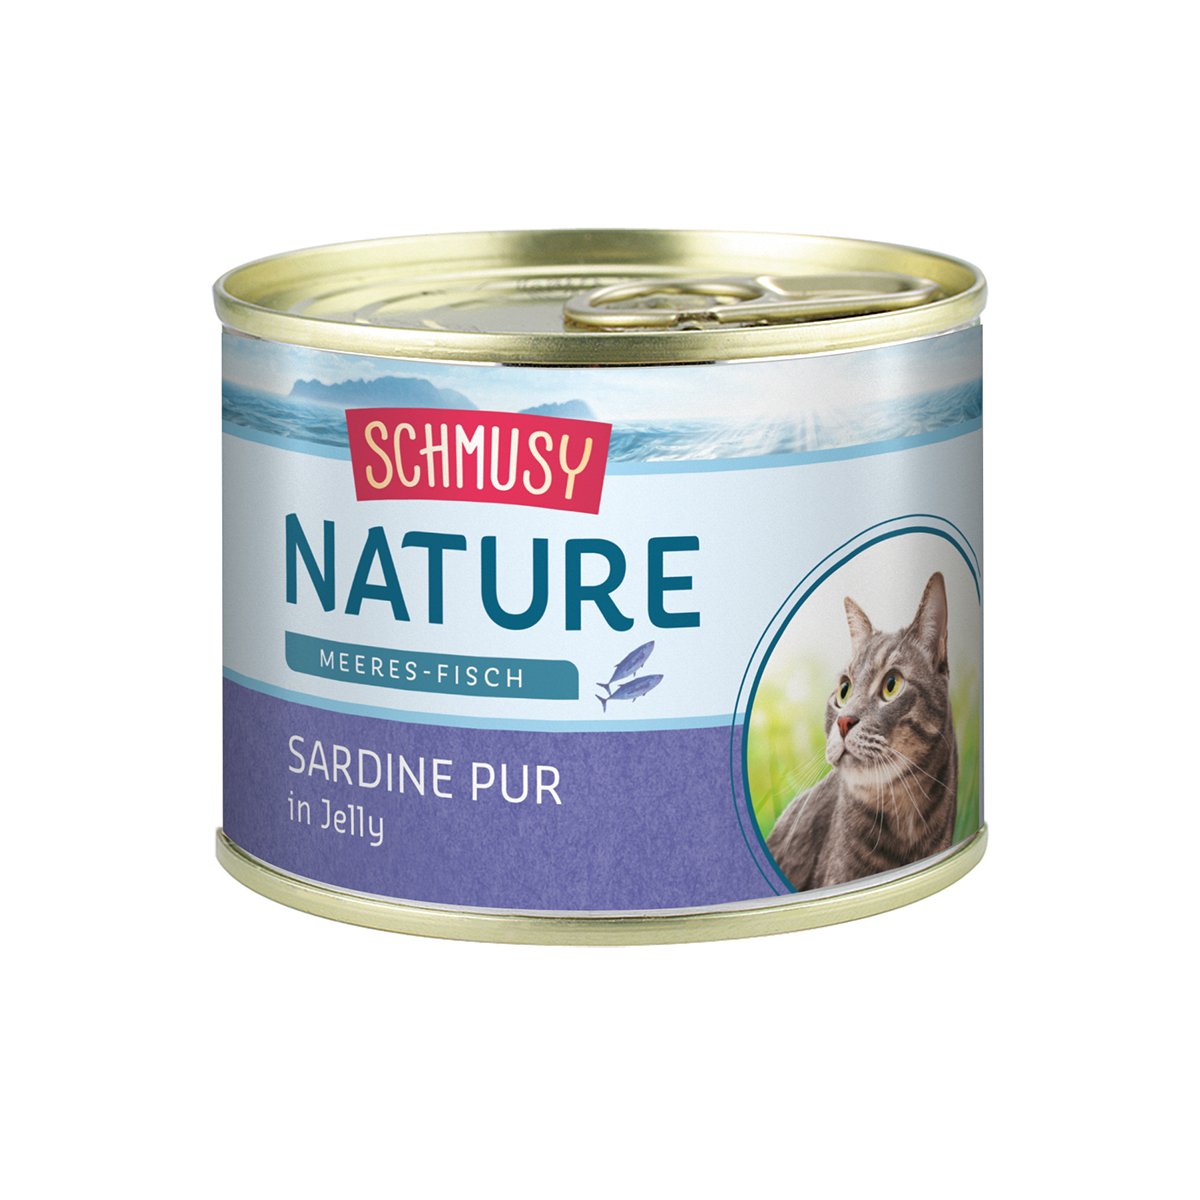 Schmusy Katzenfutter Nature Meeres-Fisch Sardine pur 12x185g von Schmusy